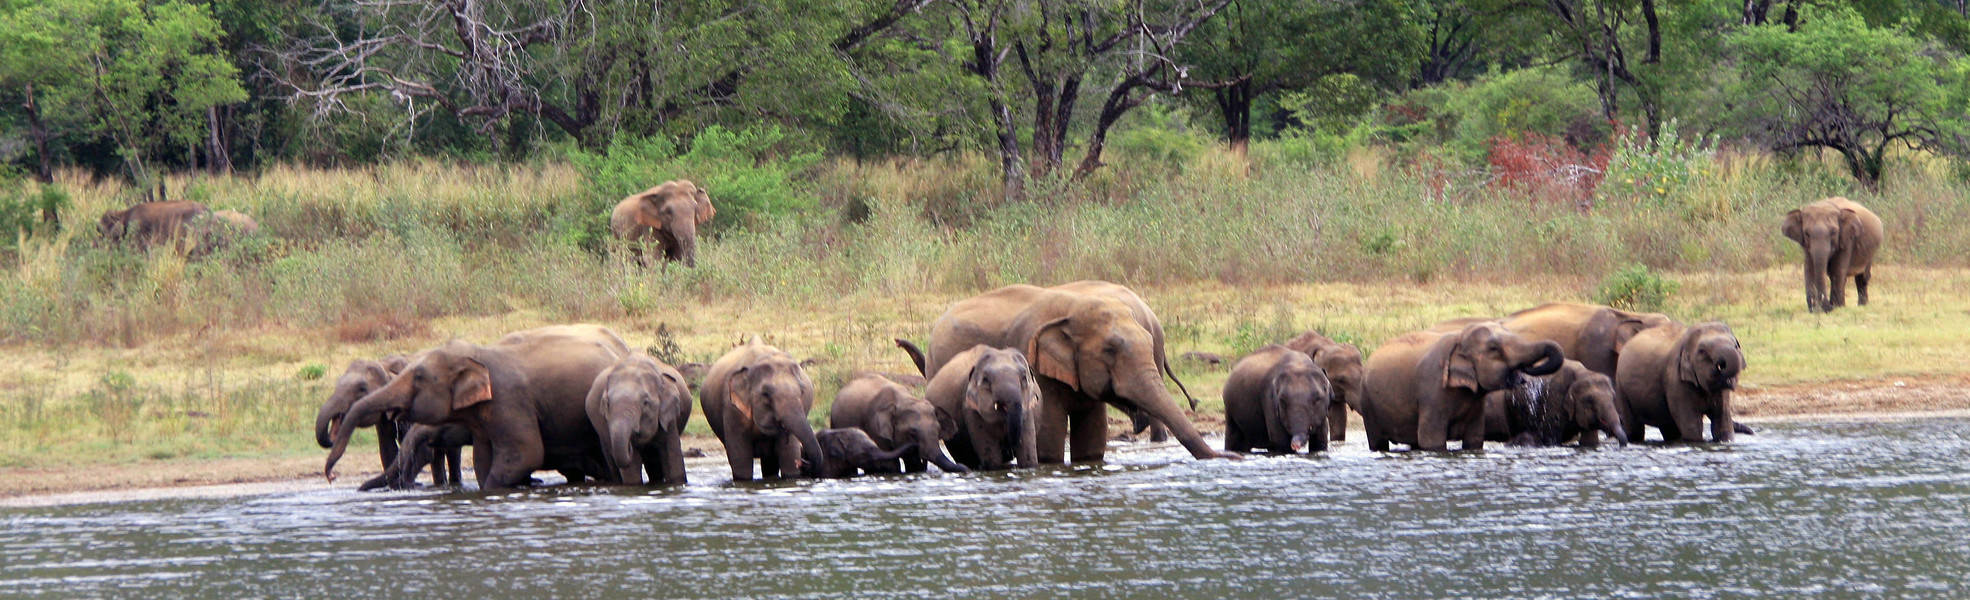 Elefanten im Wasgamuwa Nationalpark in Sri Lanka